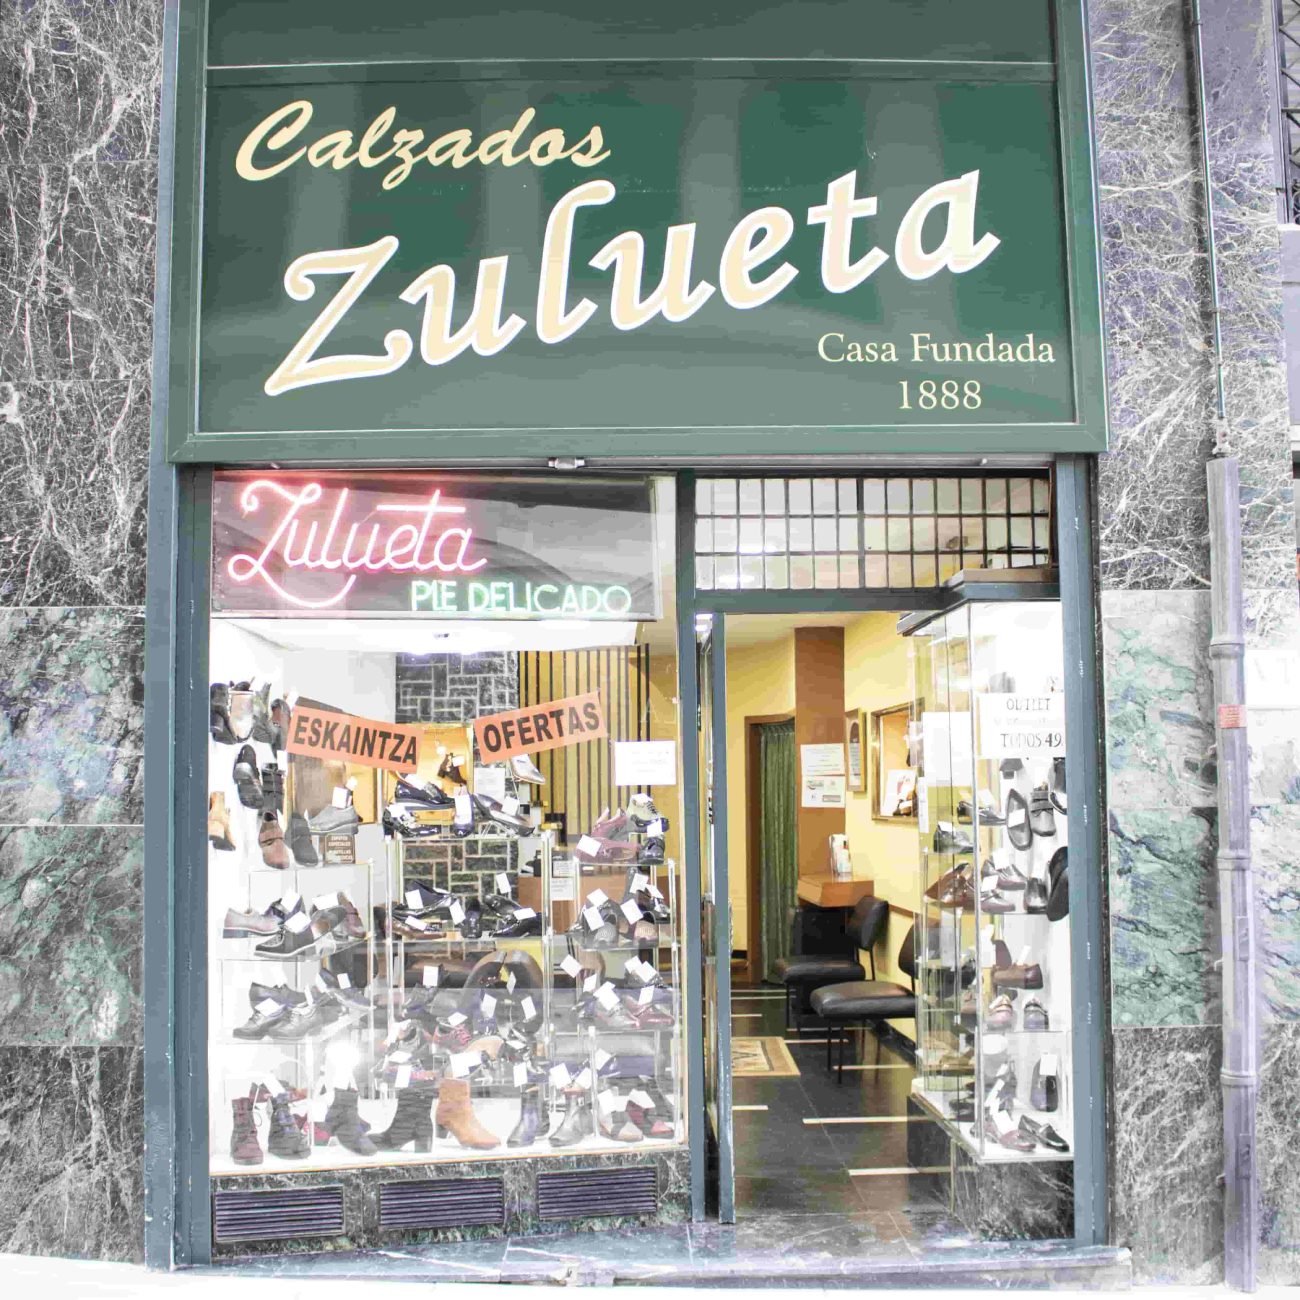 Una de las zapaterias más emblemática de Bilbao